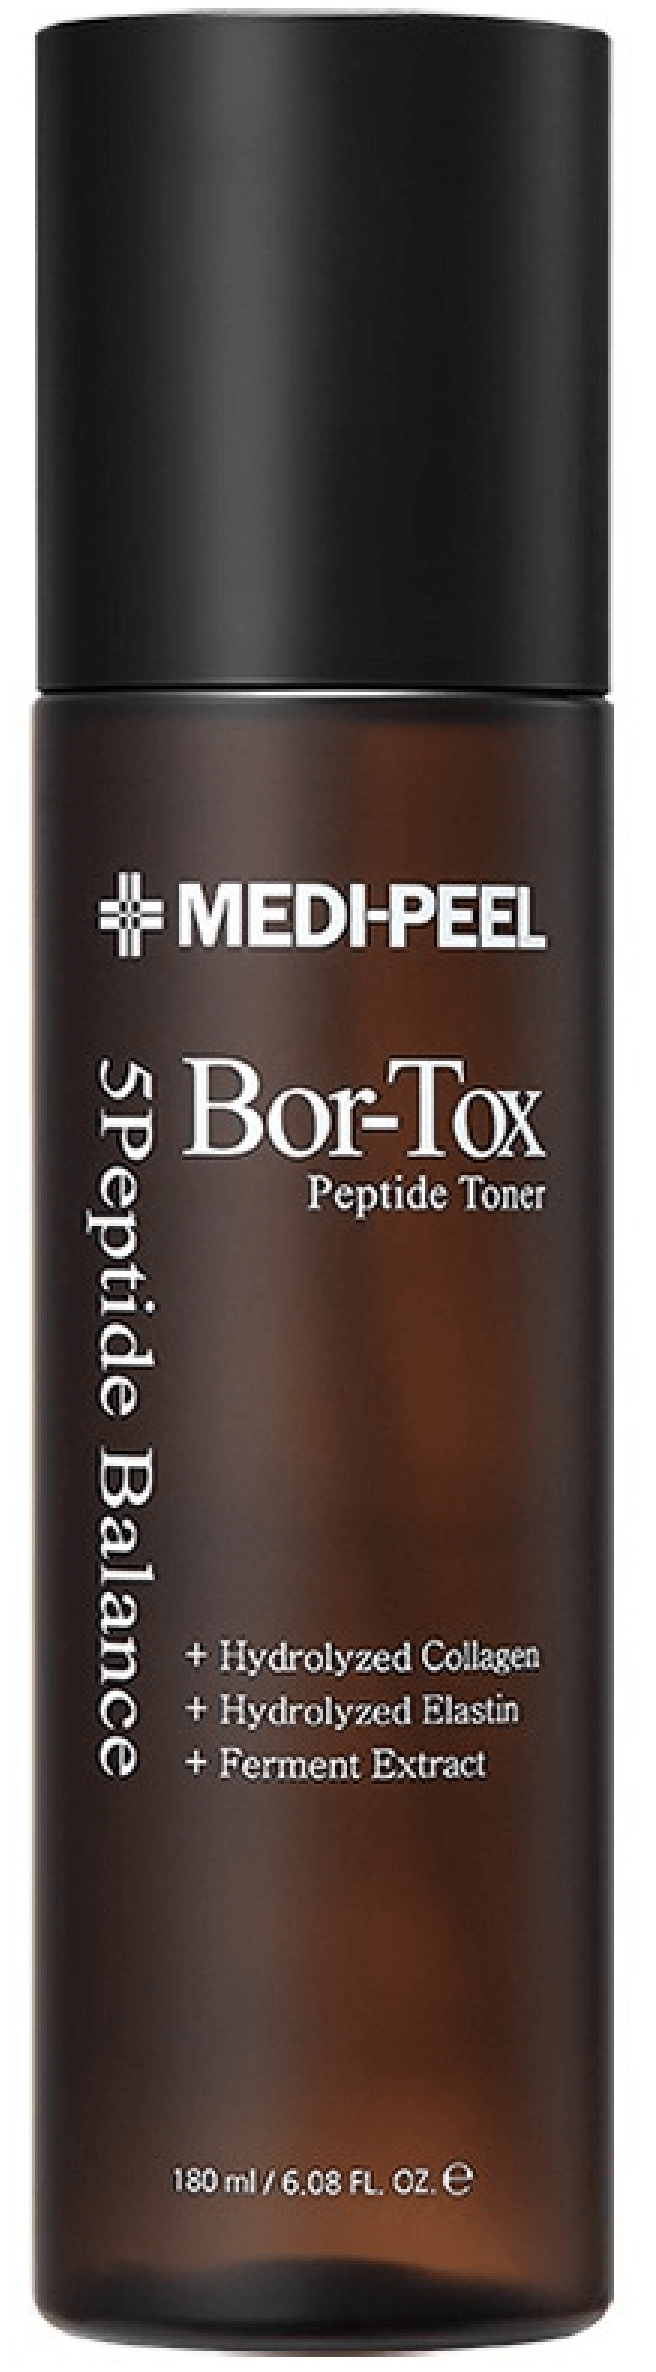 Тонер для лица с эффектом ботокса Bor-Tox Peptide Toner, 180мл MEDI-PEEL